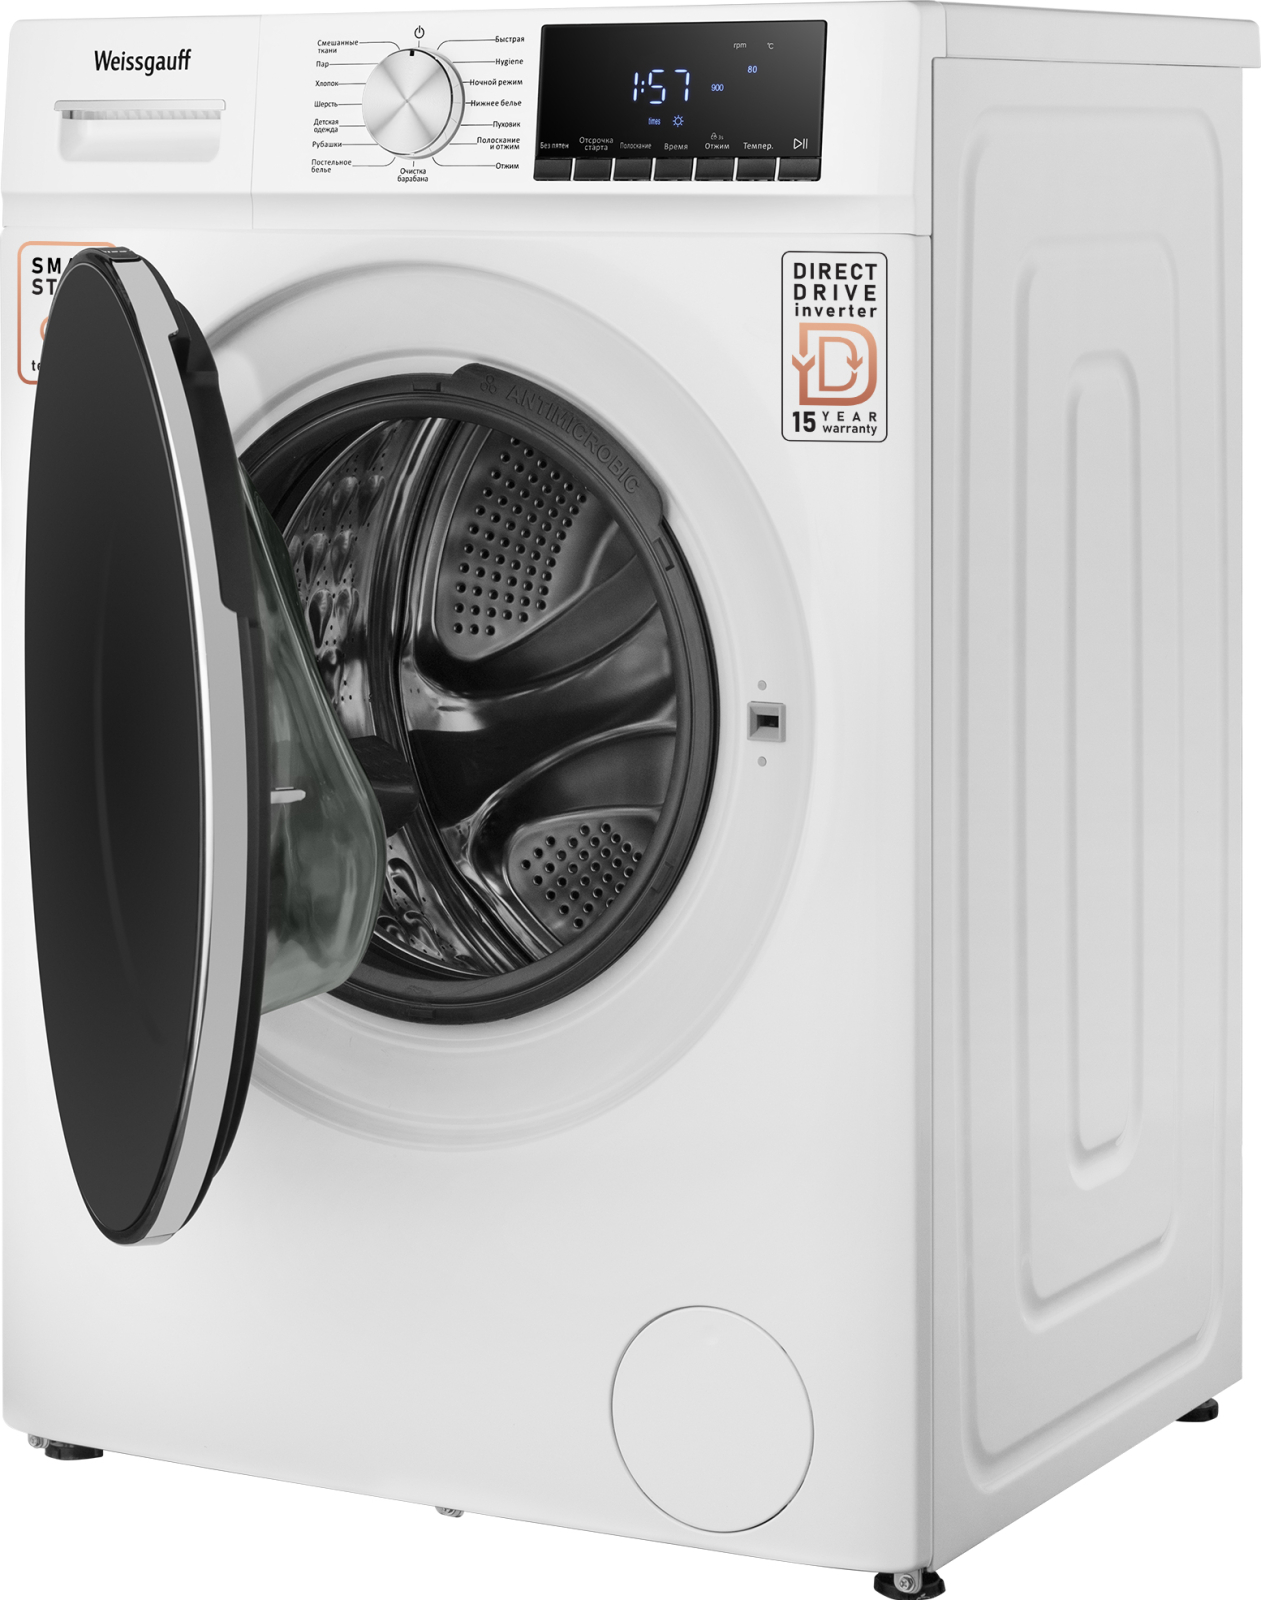 Ремонт стиральных машин LG - цены, заказать ремонт стиральной машины LG